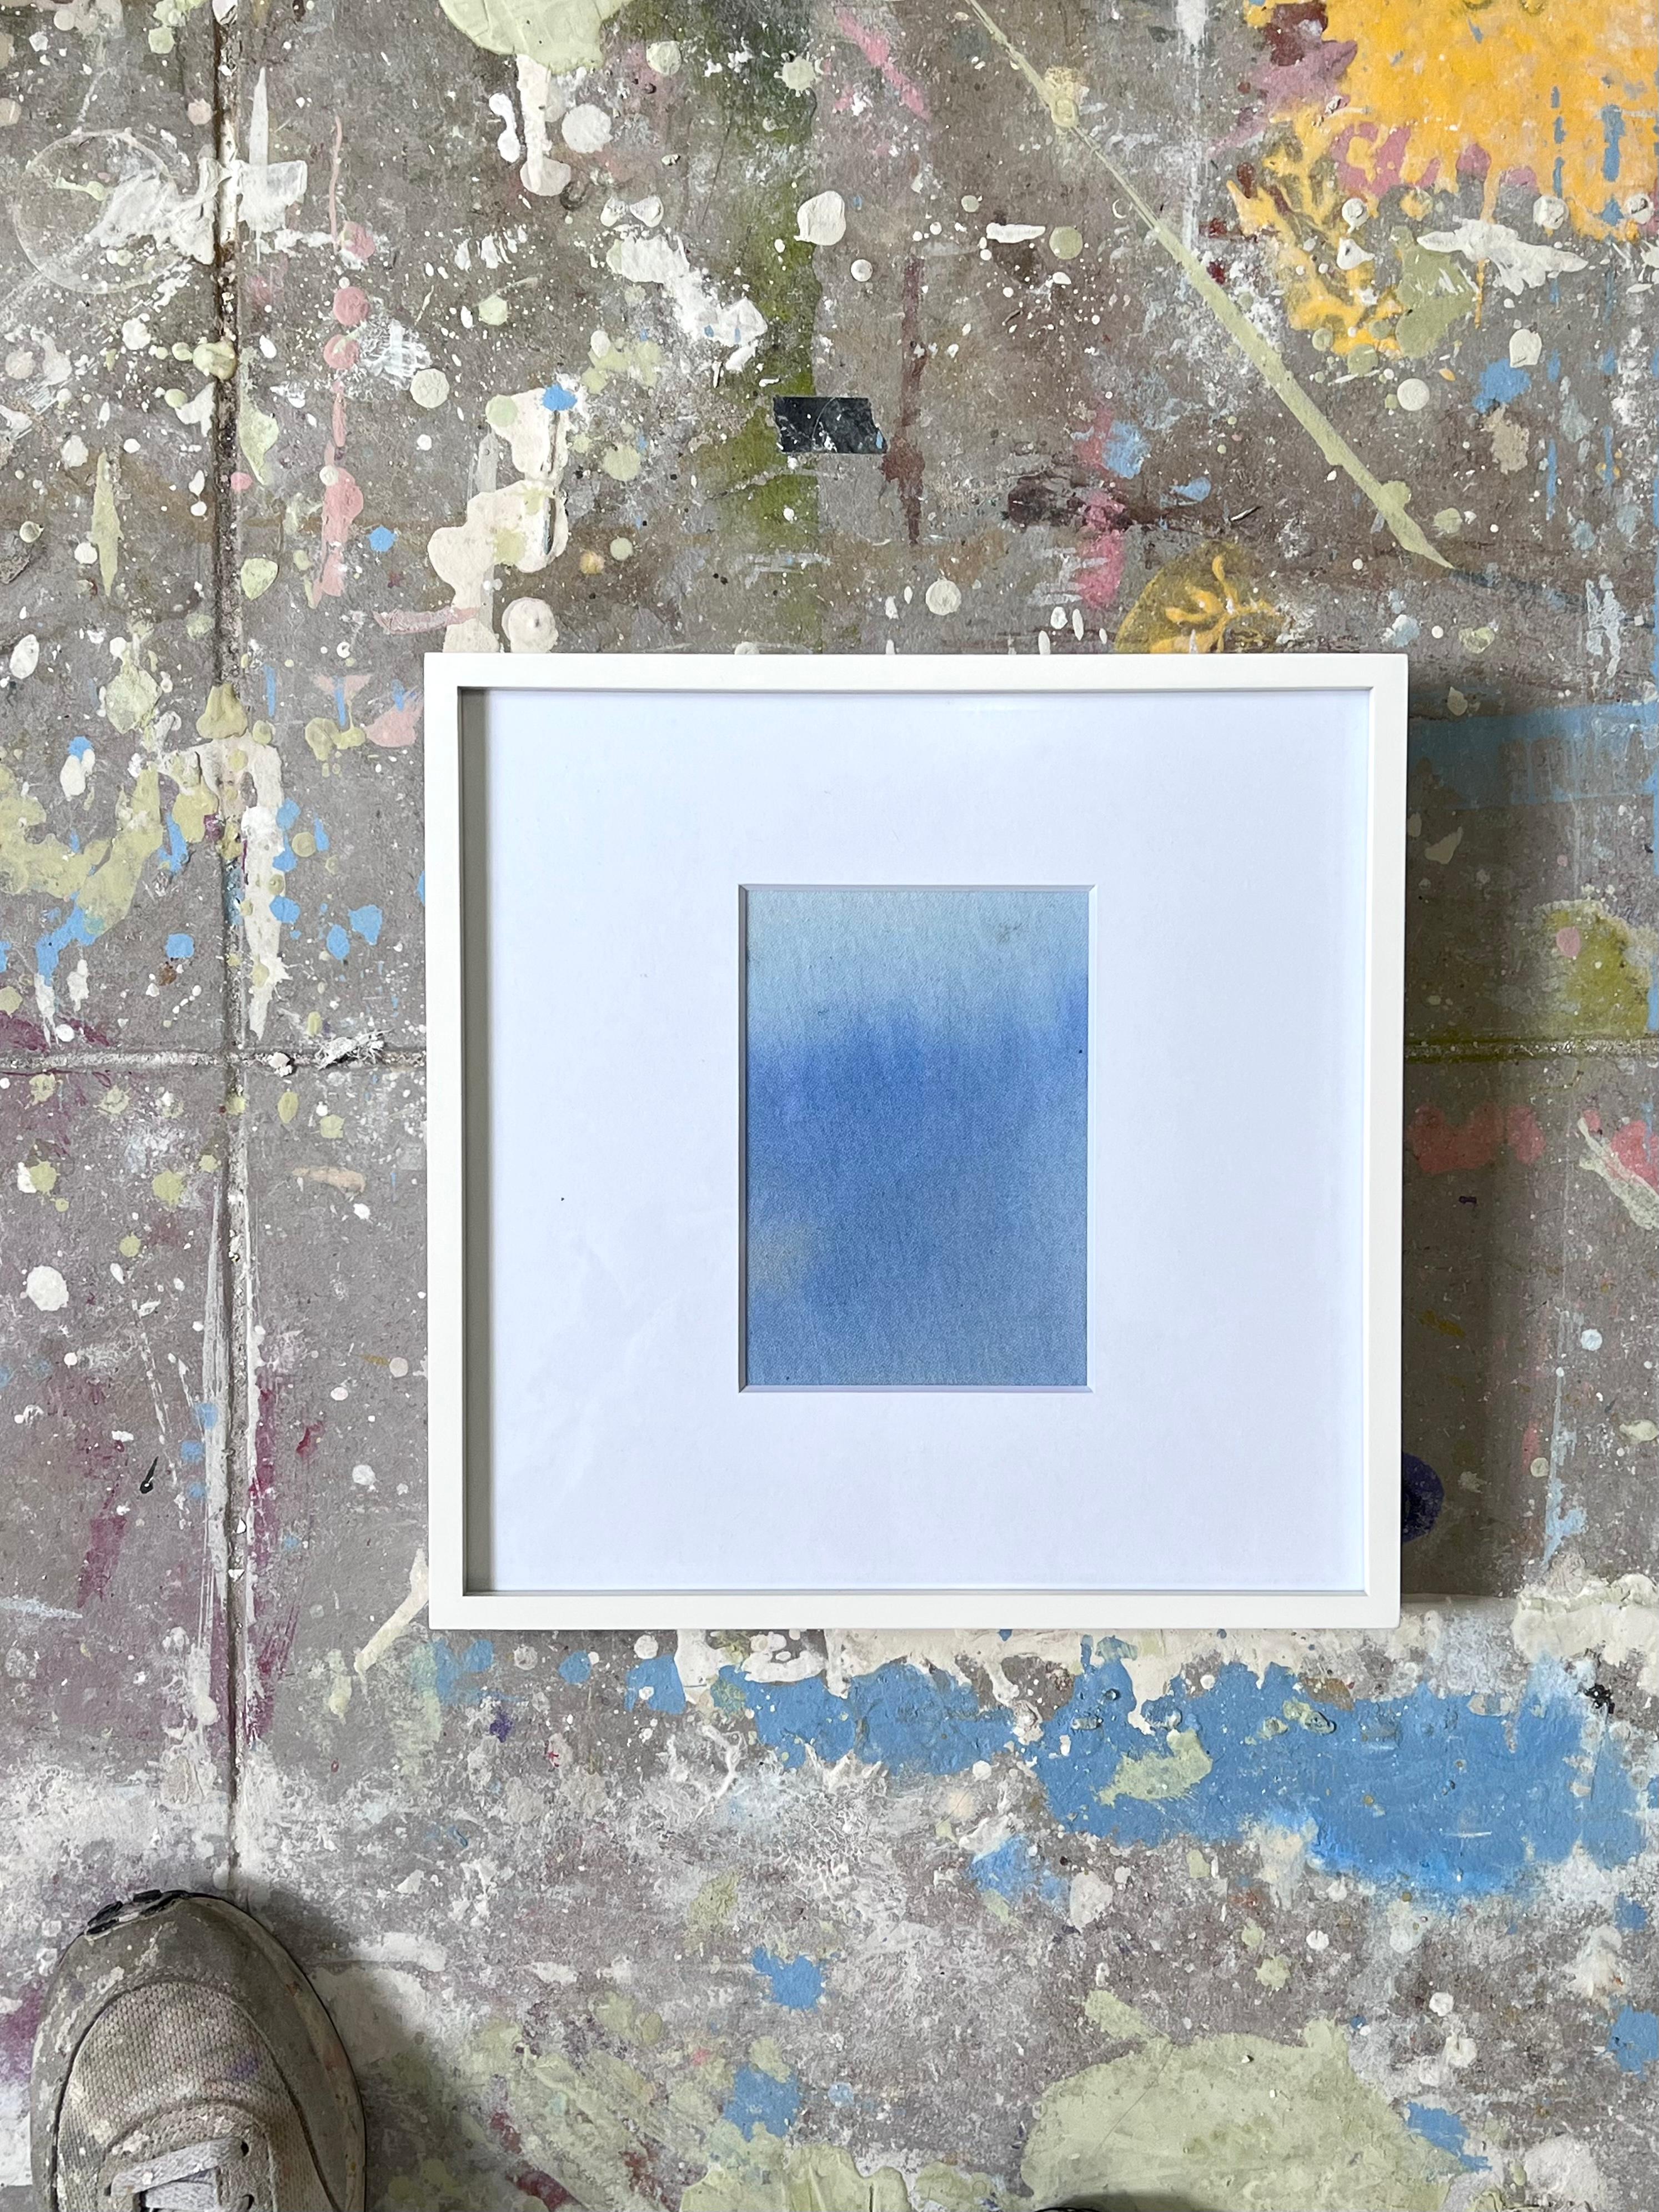 Dégradé de bleu clair, peinture abstraite de champ de couleur, dans une boîte d'ombre, cadre blanc. 
Une peinture acrylique abstraite en dégradé de couleurs présente des transitions douces de couleurs, qui se fondent souvent d'une teinte à l'autre.